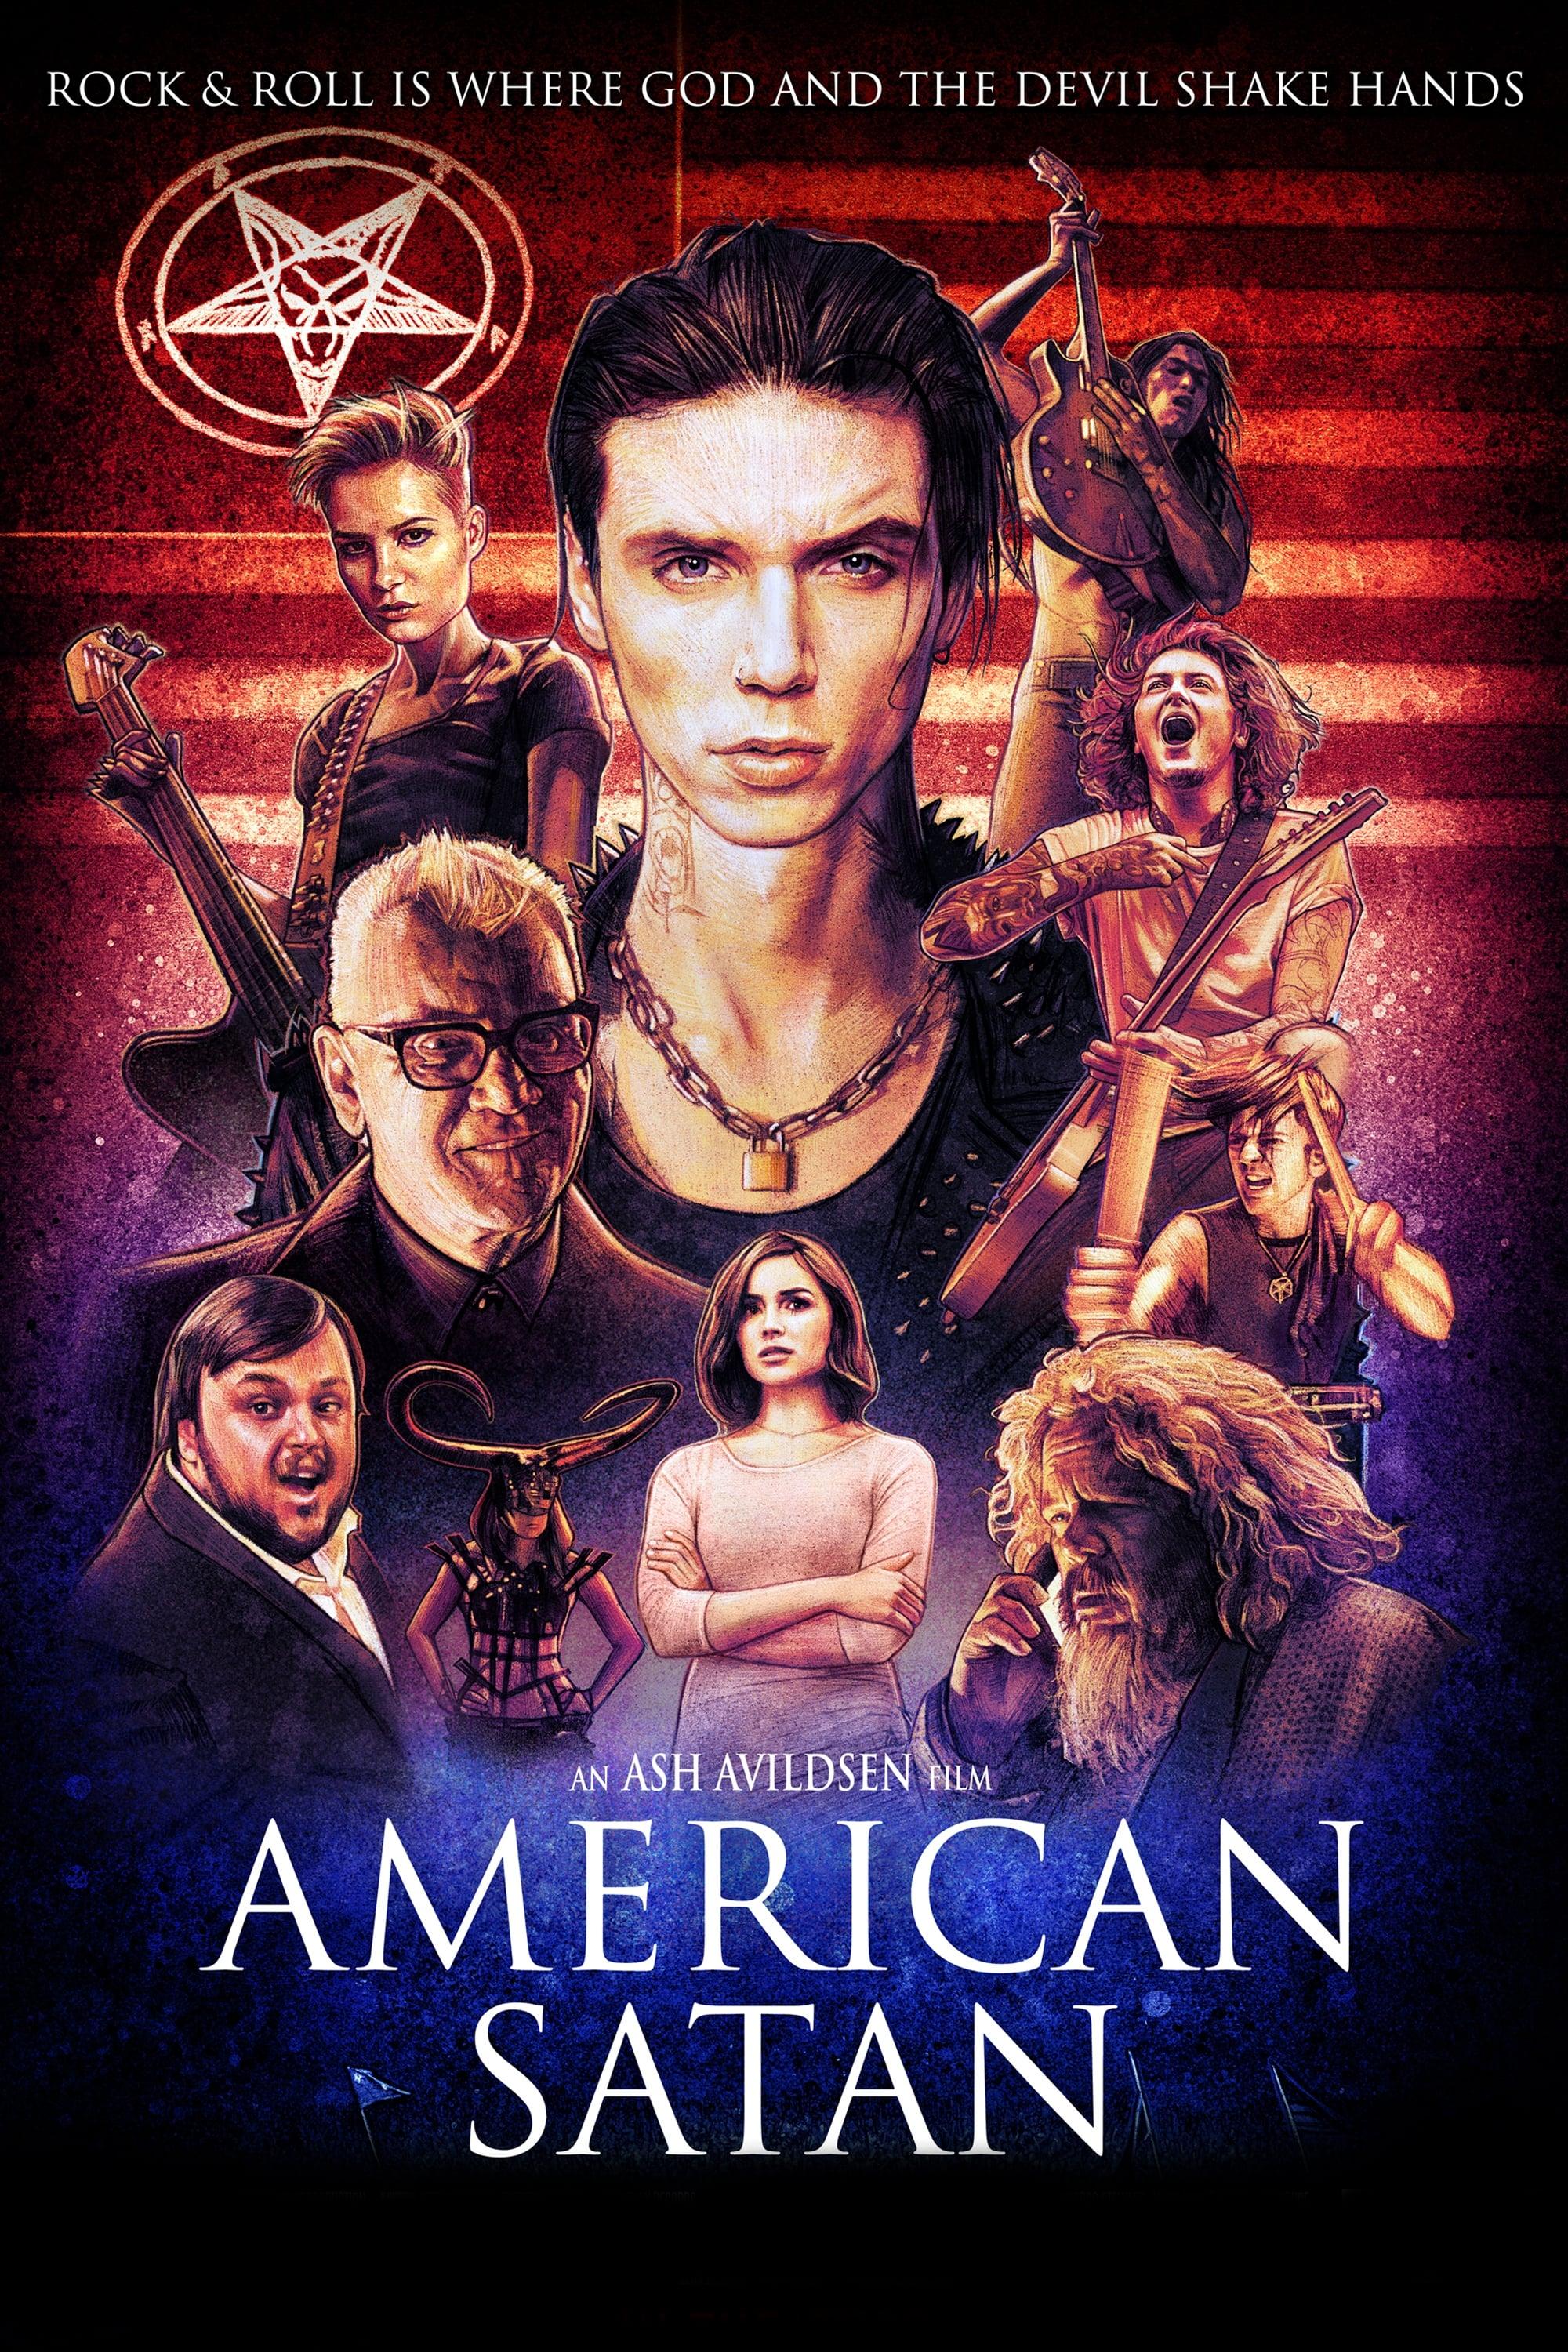 American Satan poster